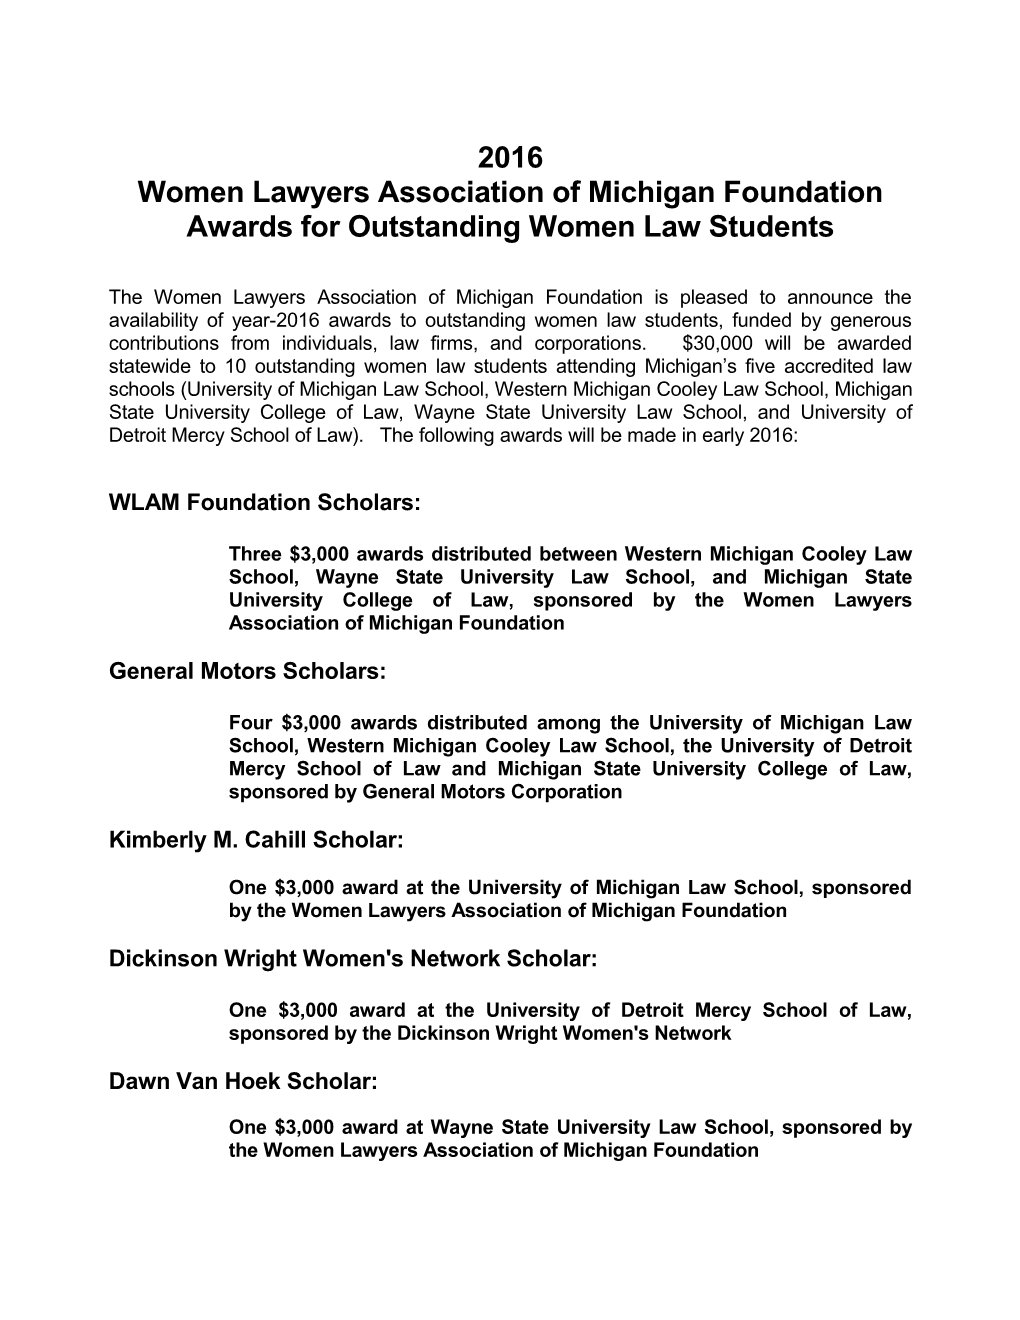 Women Lawyers Association of Michigan Foundation